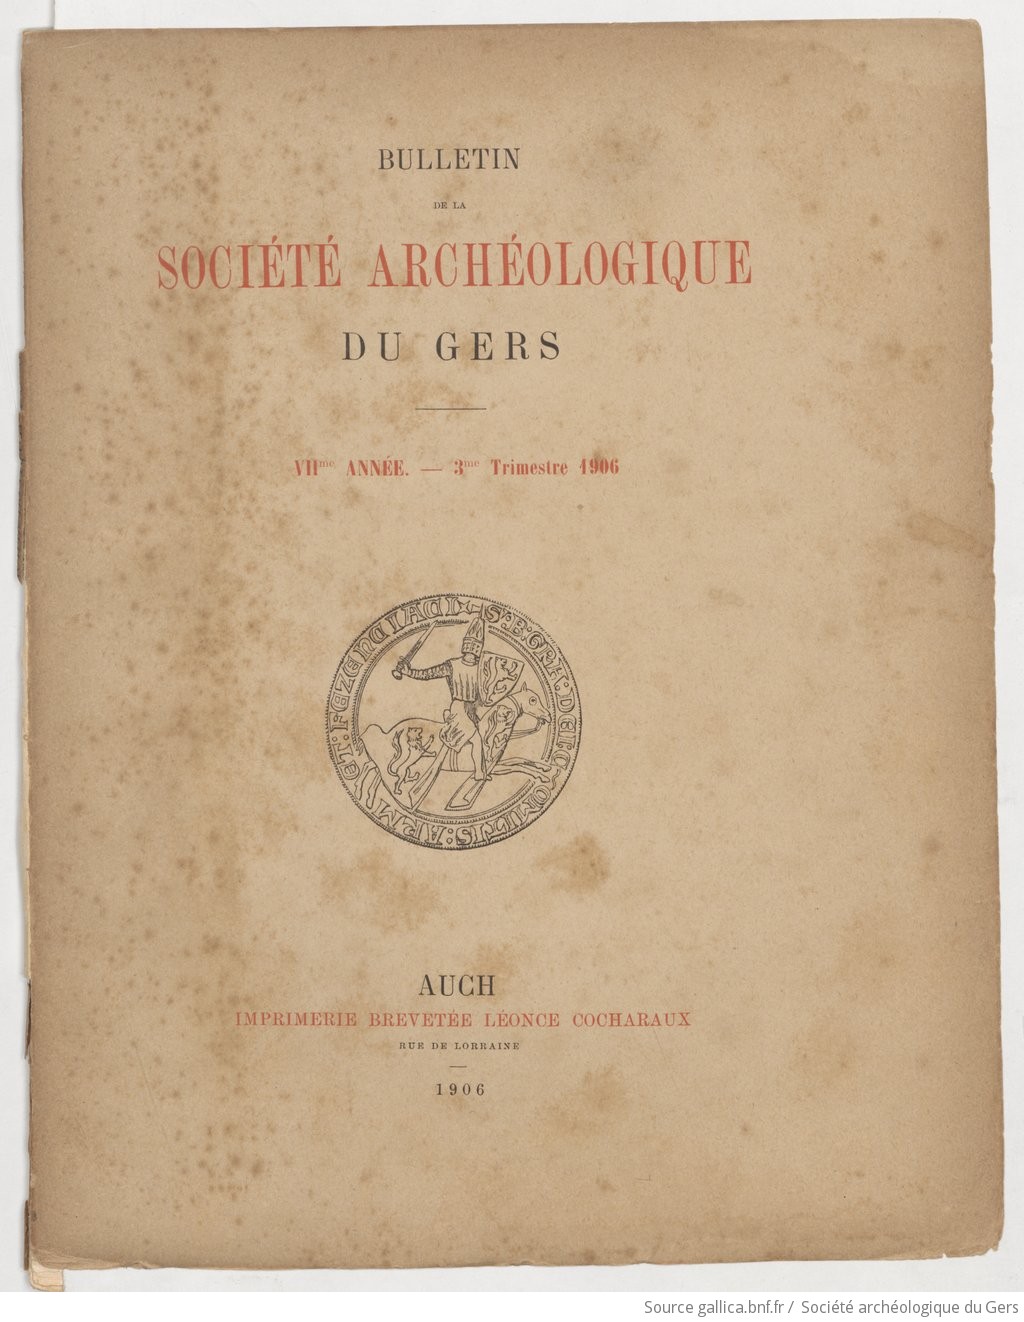 Bulletin de la Société archéologique du Gers